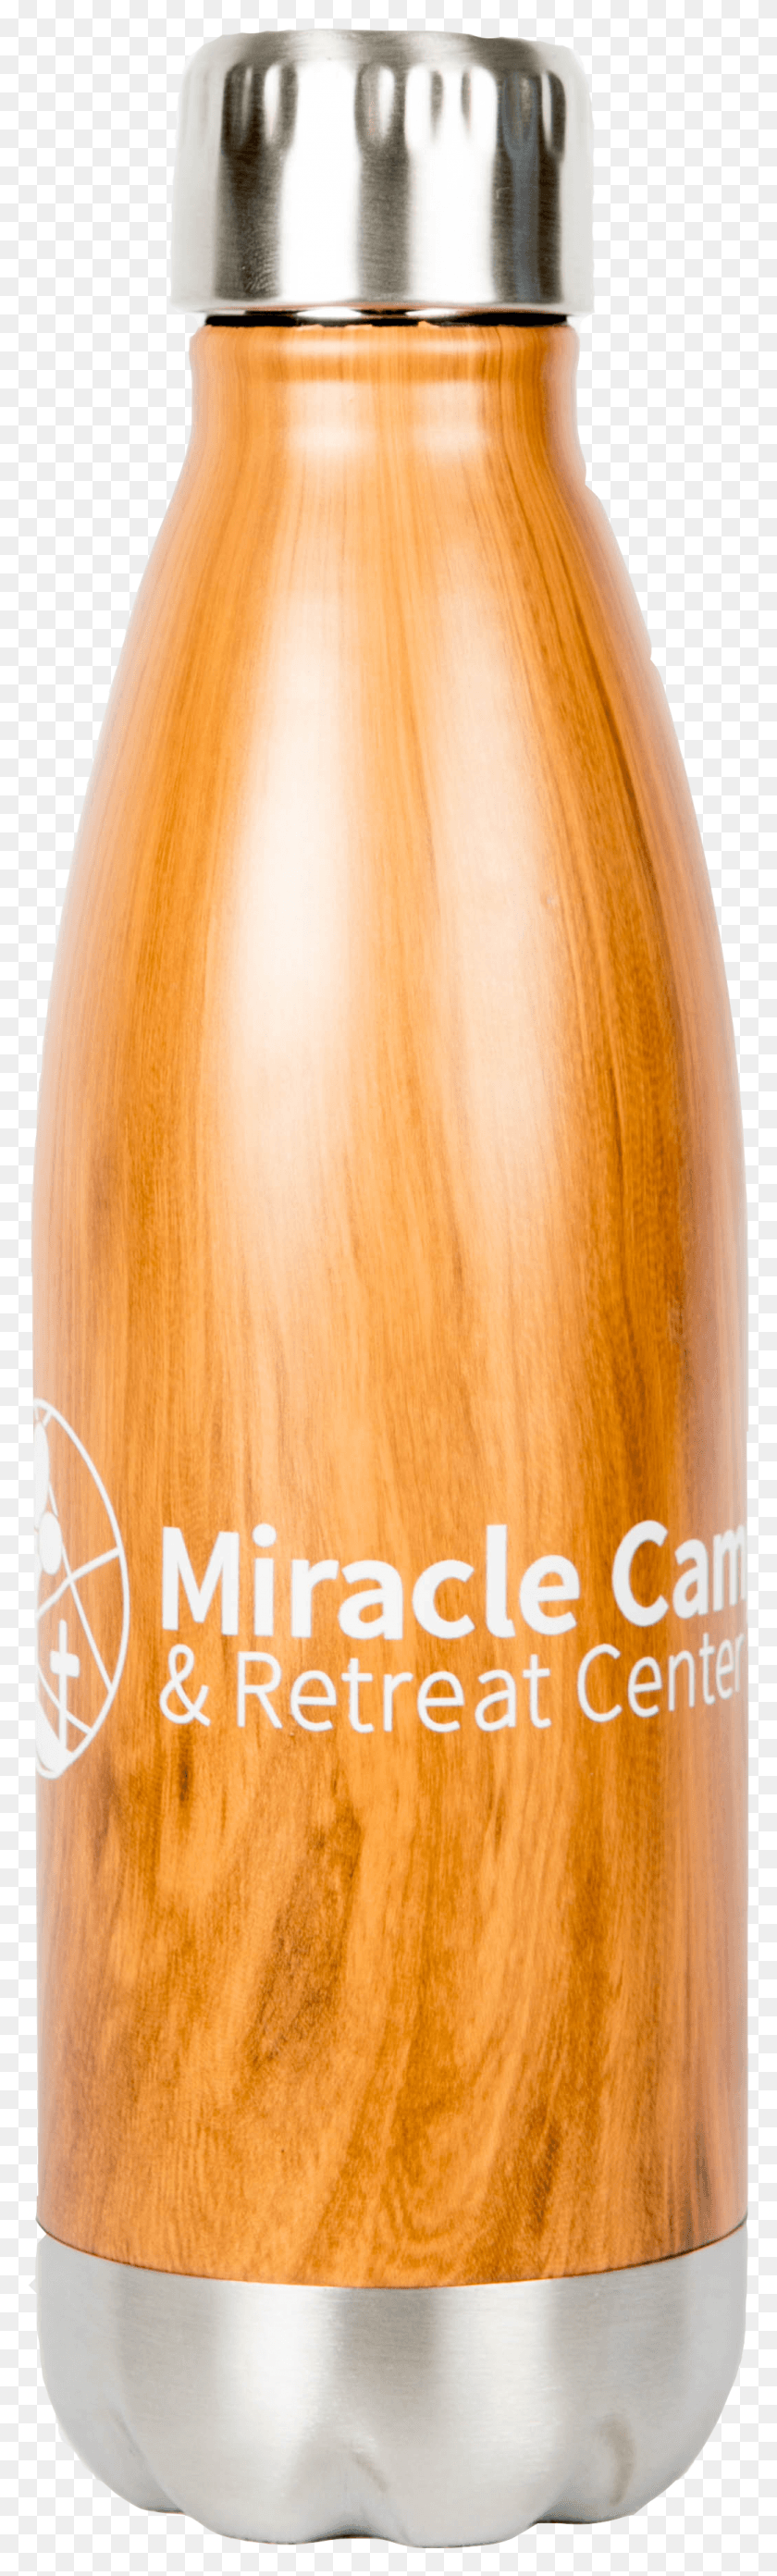 1042x3641 Descargar Png Vaso De Madera Miracle Ear, Lámpara, Botella, Bebida Hd Png